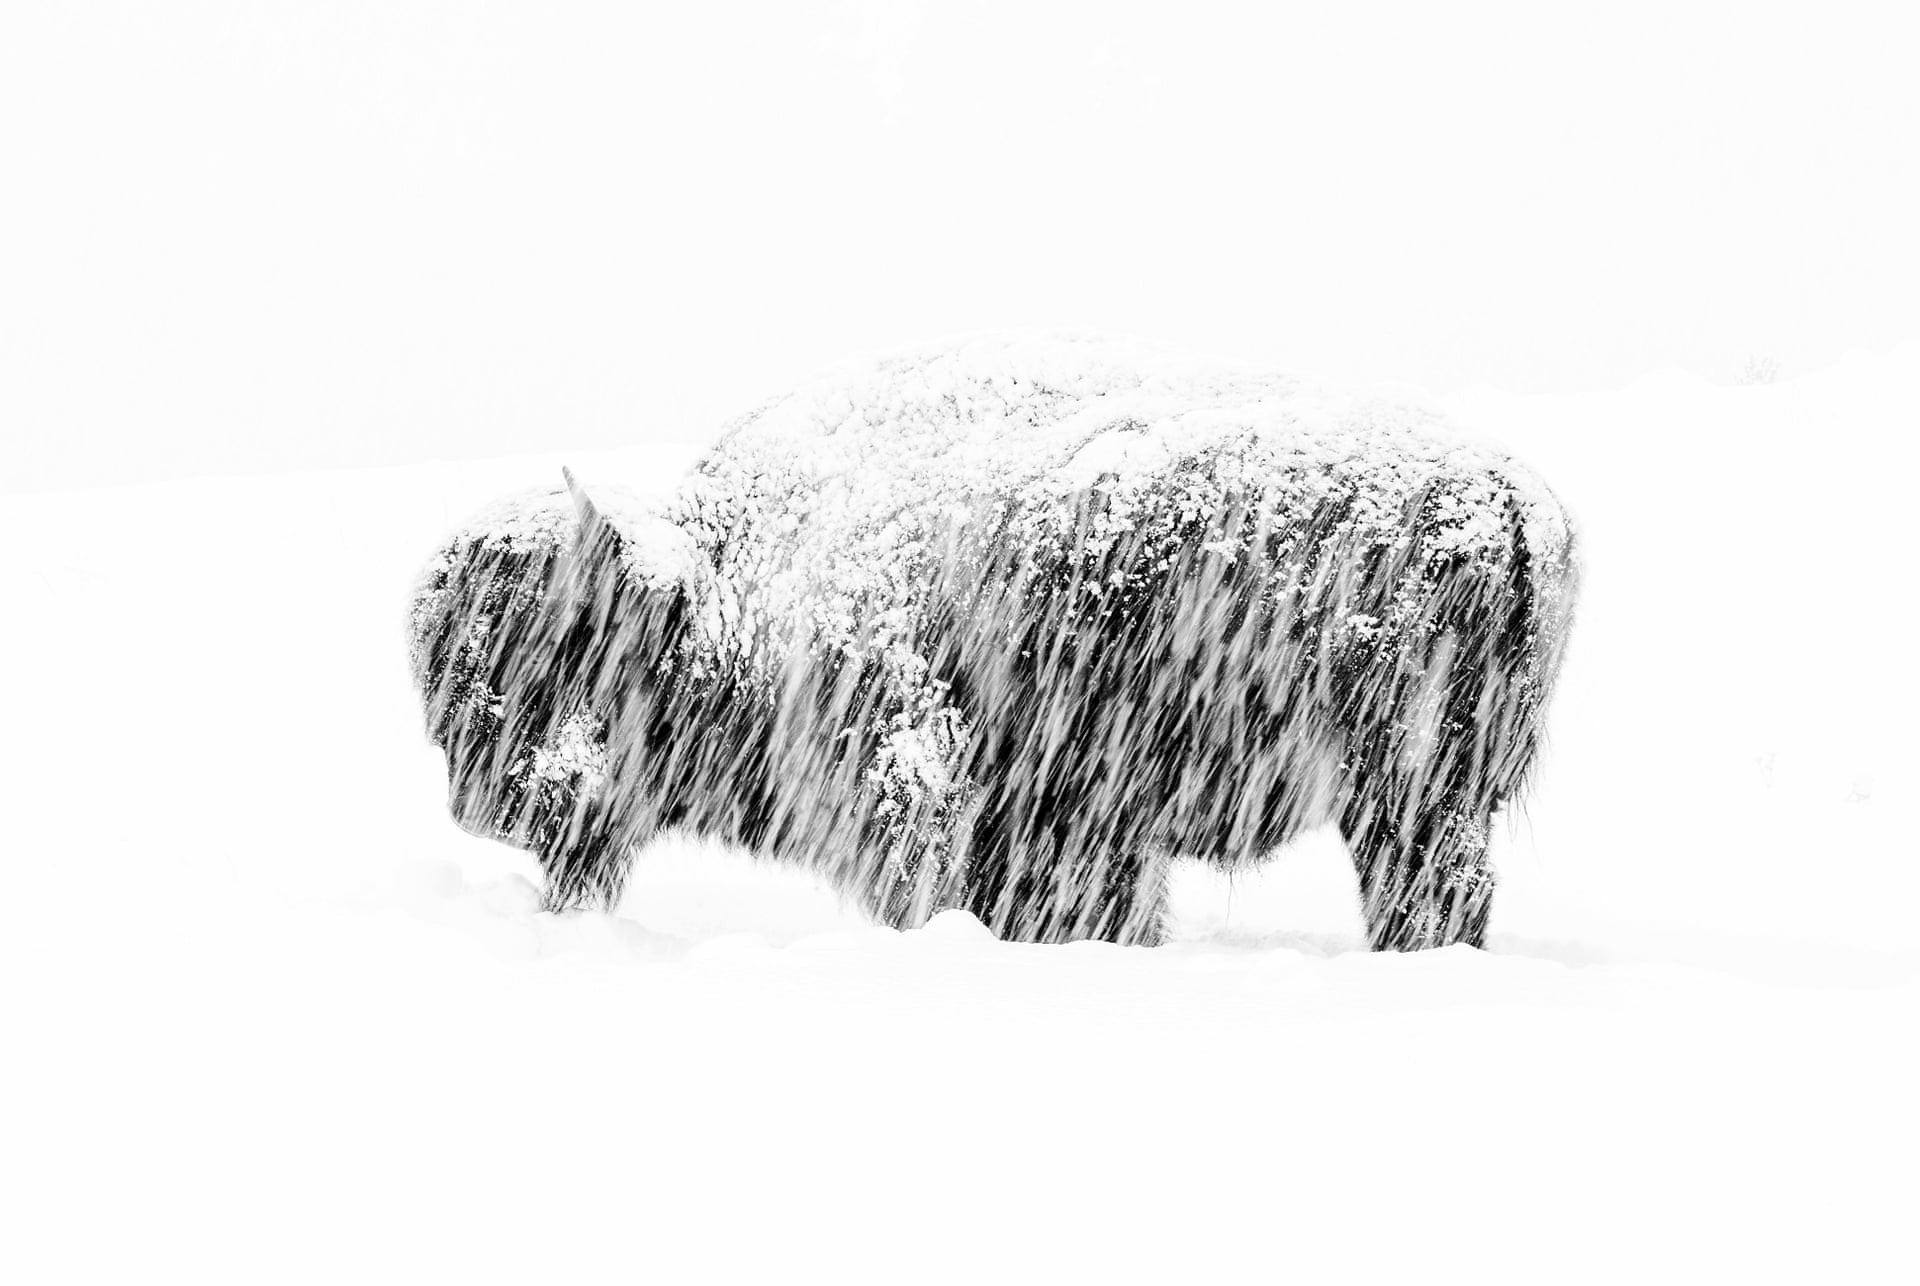 Бизон в снежную бурю в Йеллоустонском национальном парке. Победитель в категории Чёрно-белое фото. Автор Макс Во